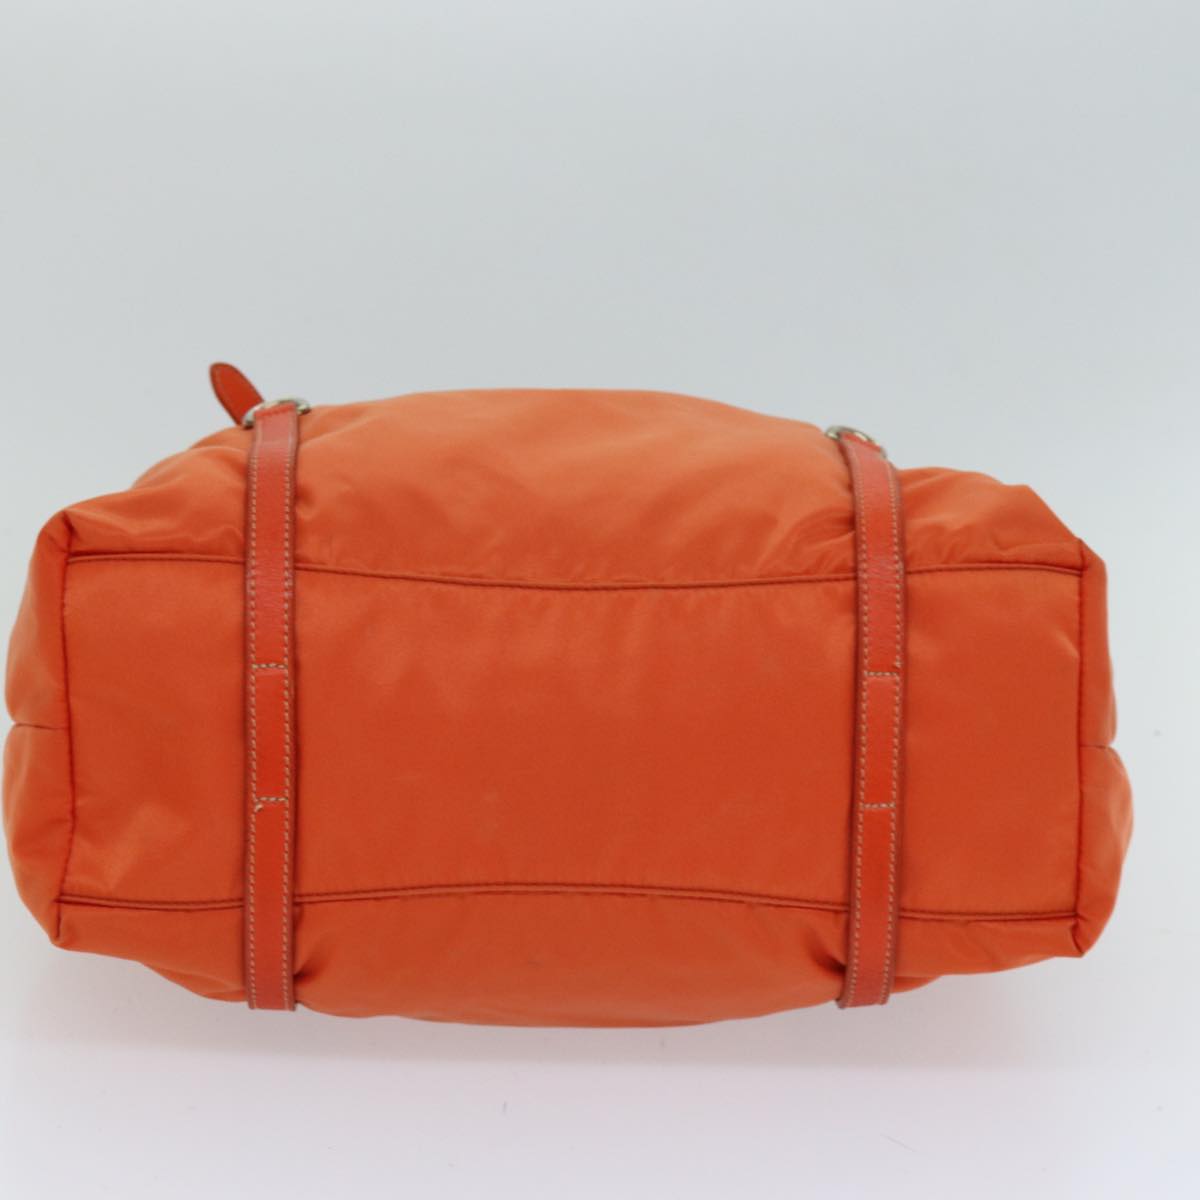 PRADA Tote Bag Nylon Orange Auth 75692